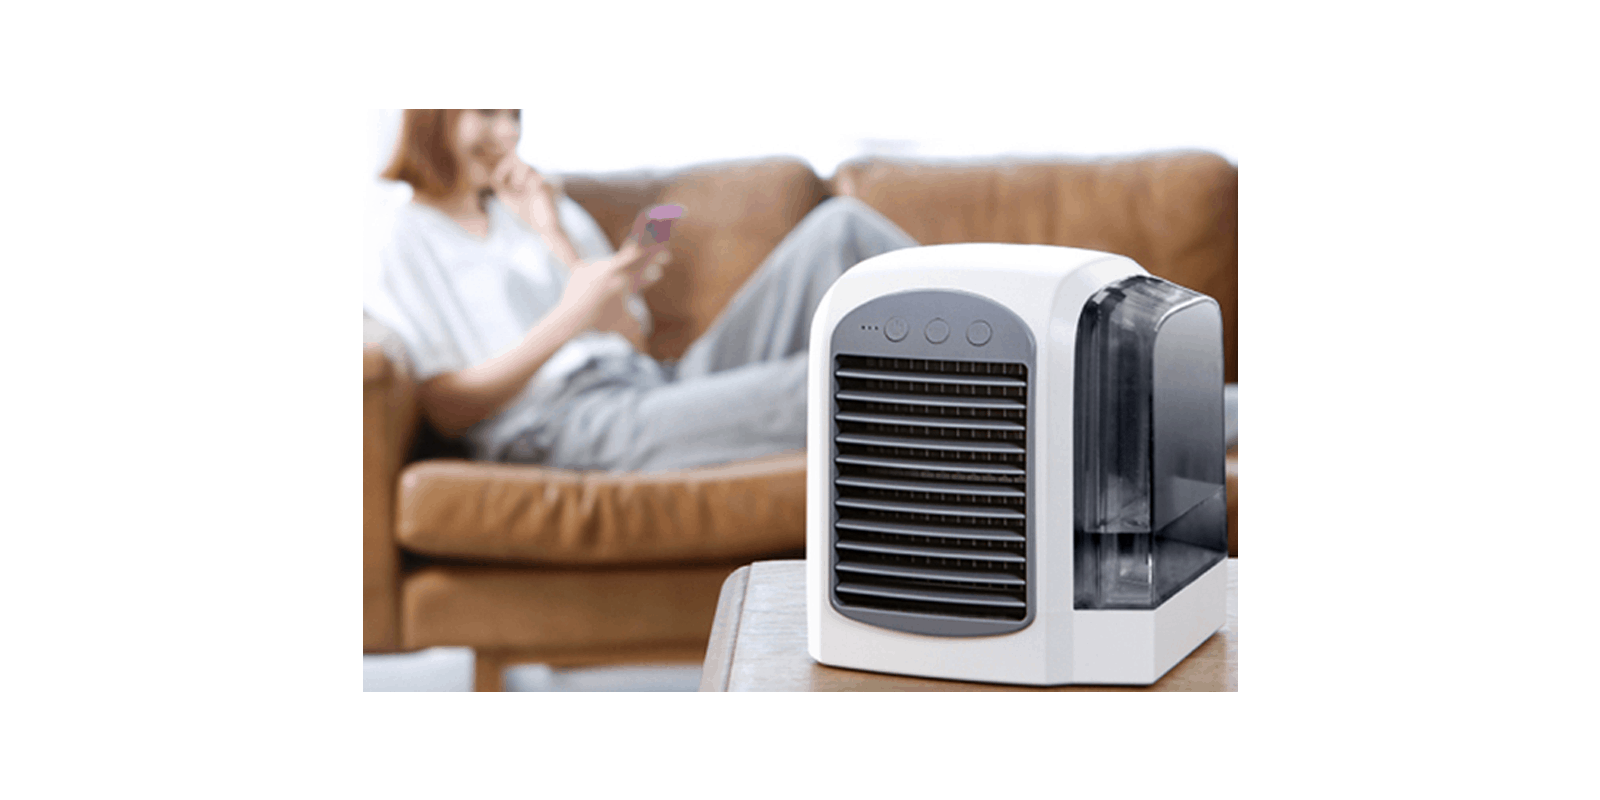 Breeze Maxx air conditioner